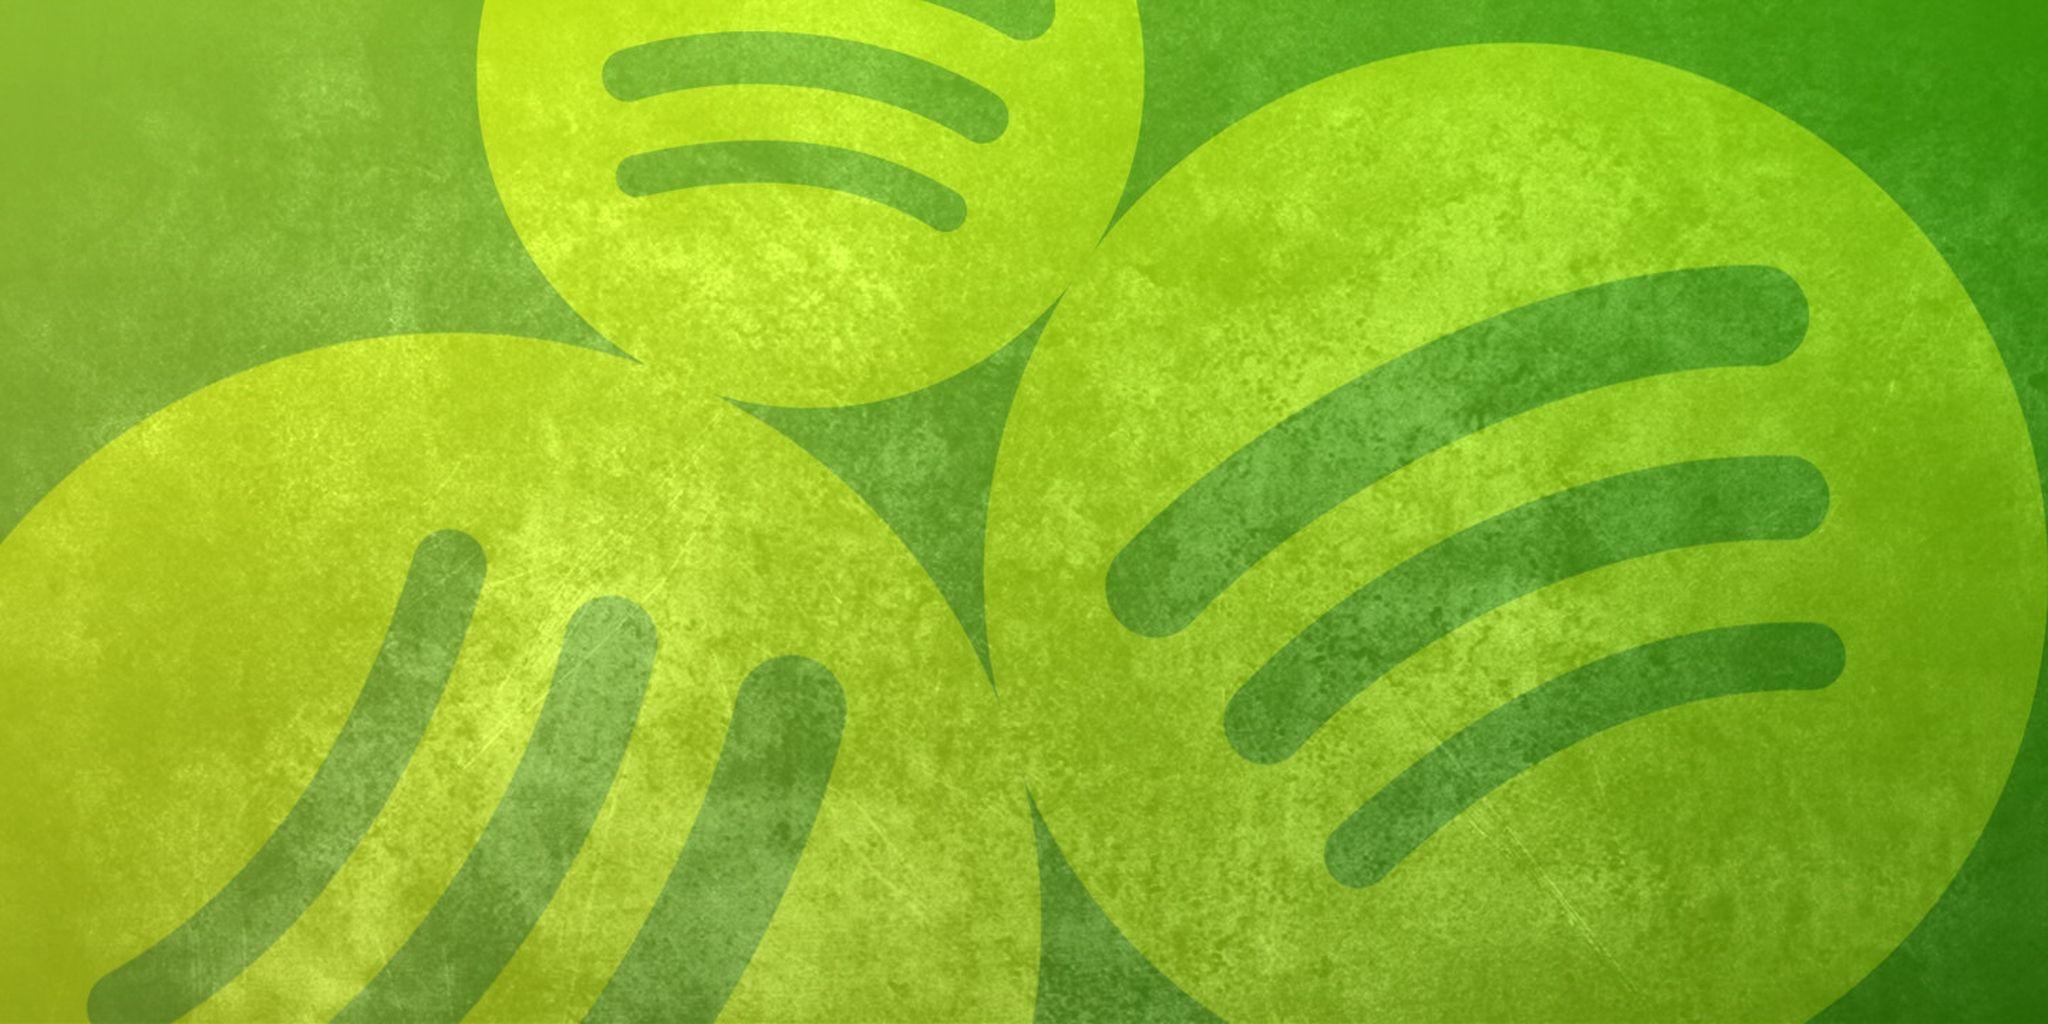 Spotify Logo Wallpapers